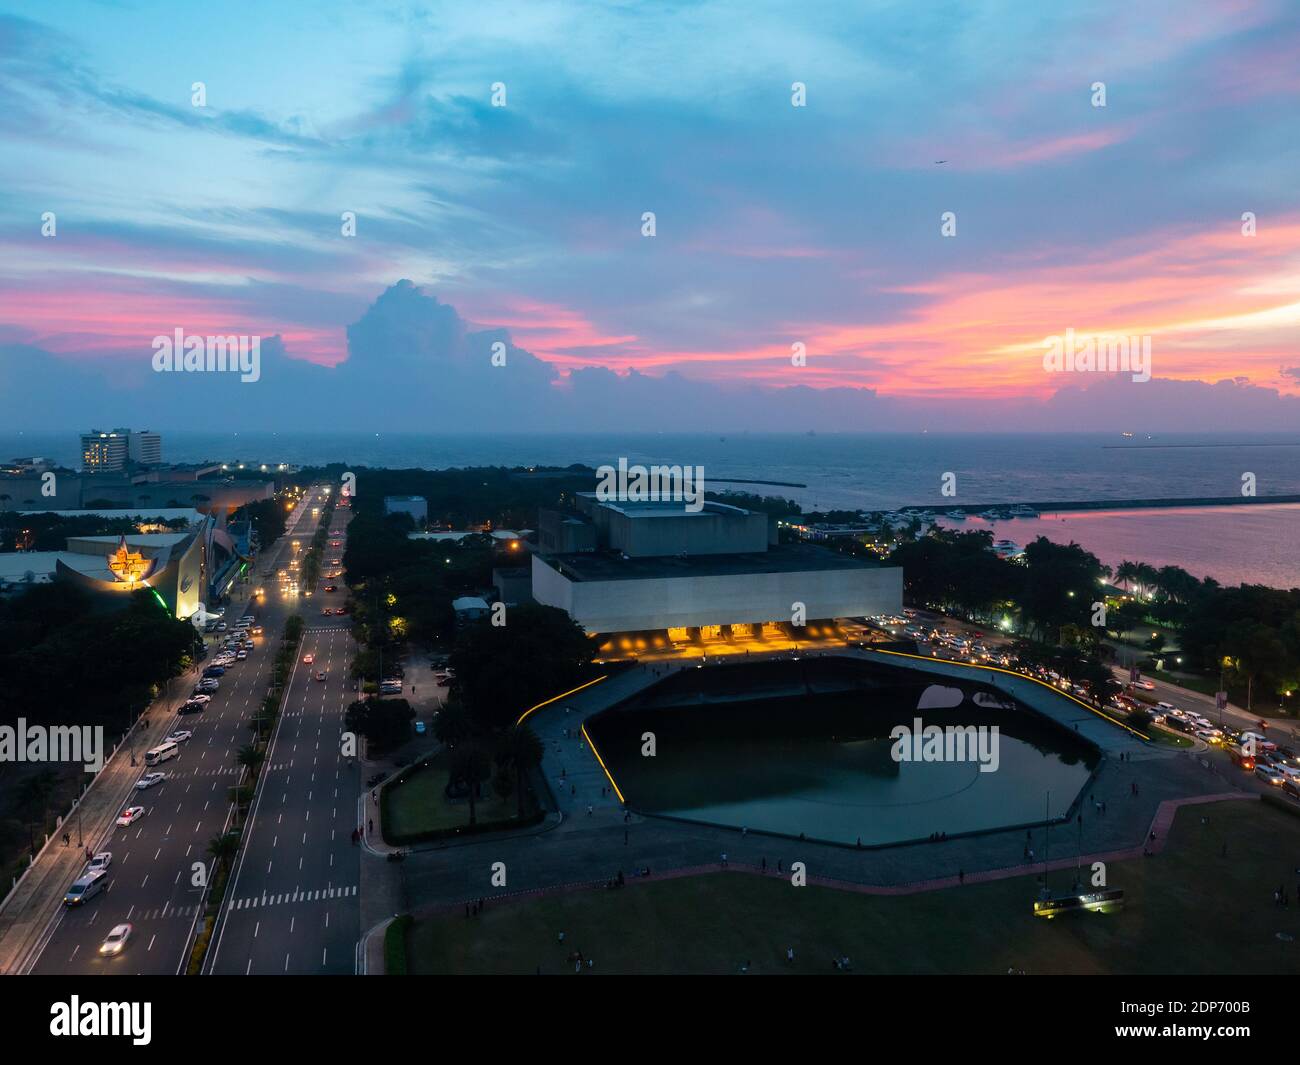 Tanghalang Pambansa, il Teatro Nazionale, una parte del Centro Culturale delle Filippine, al tramonto con la Baia di Manila sullo sfondo. Il teatro Foto Stock